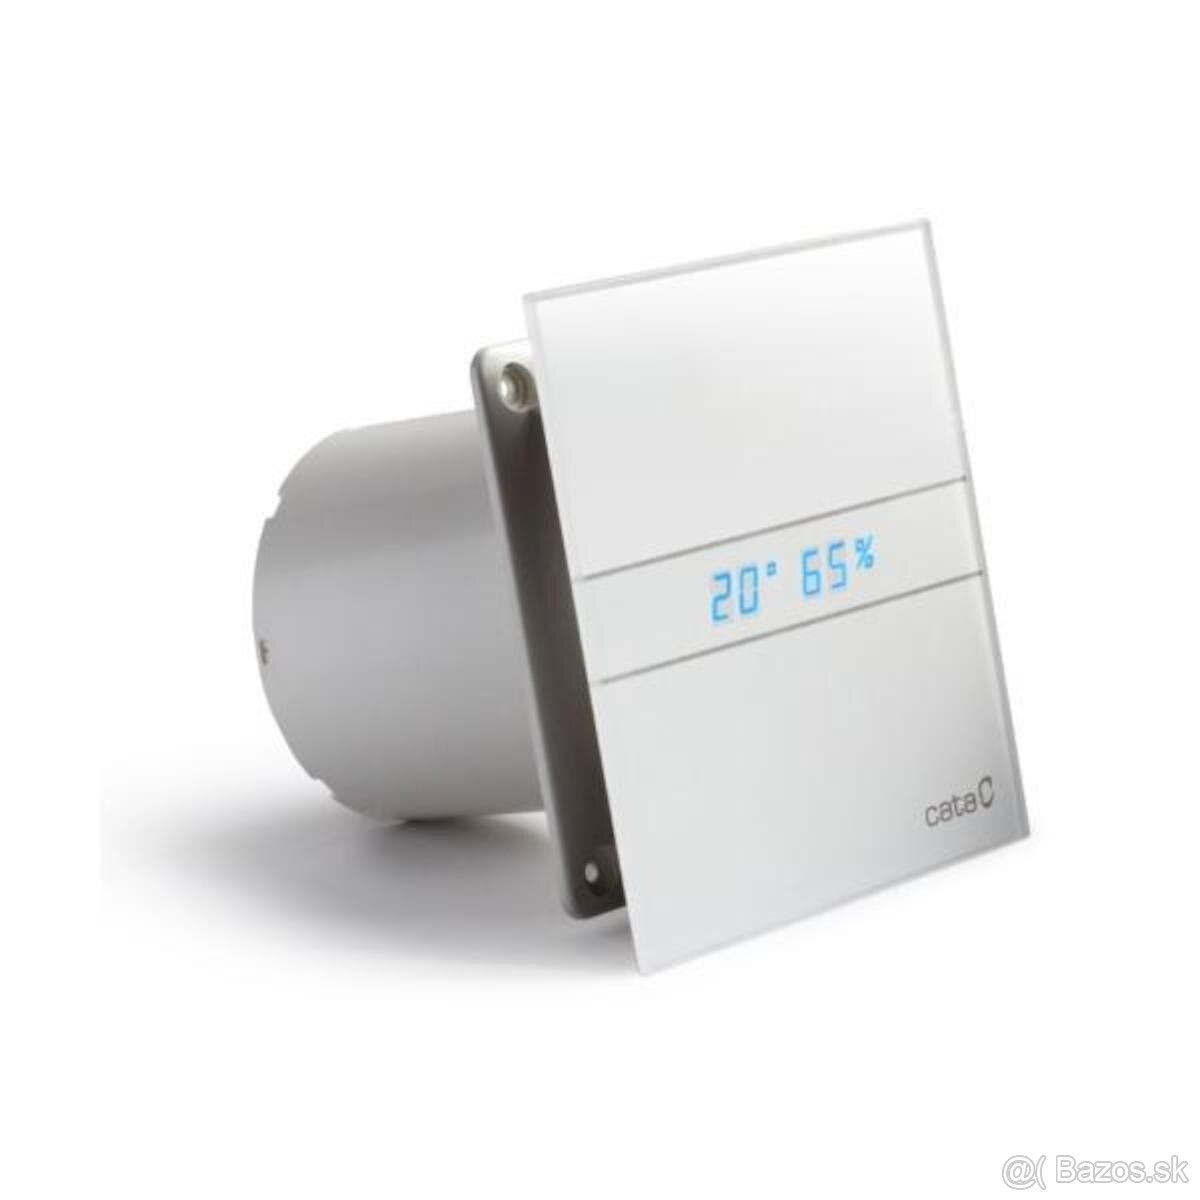 Ventilátor do kúpeľne / wc CATA E100 GTH SIKO